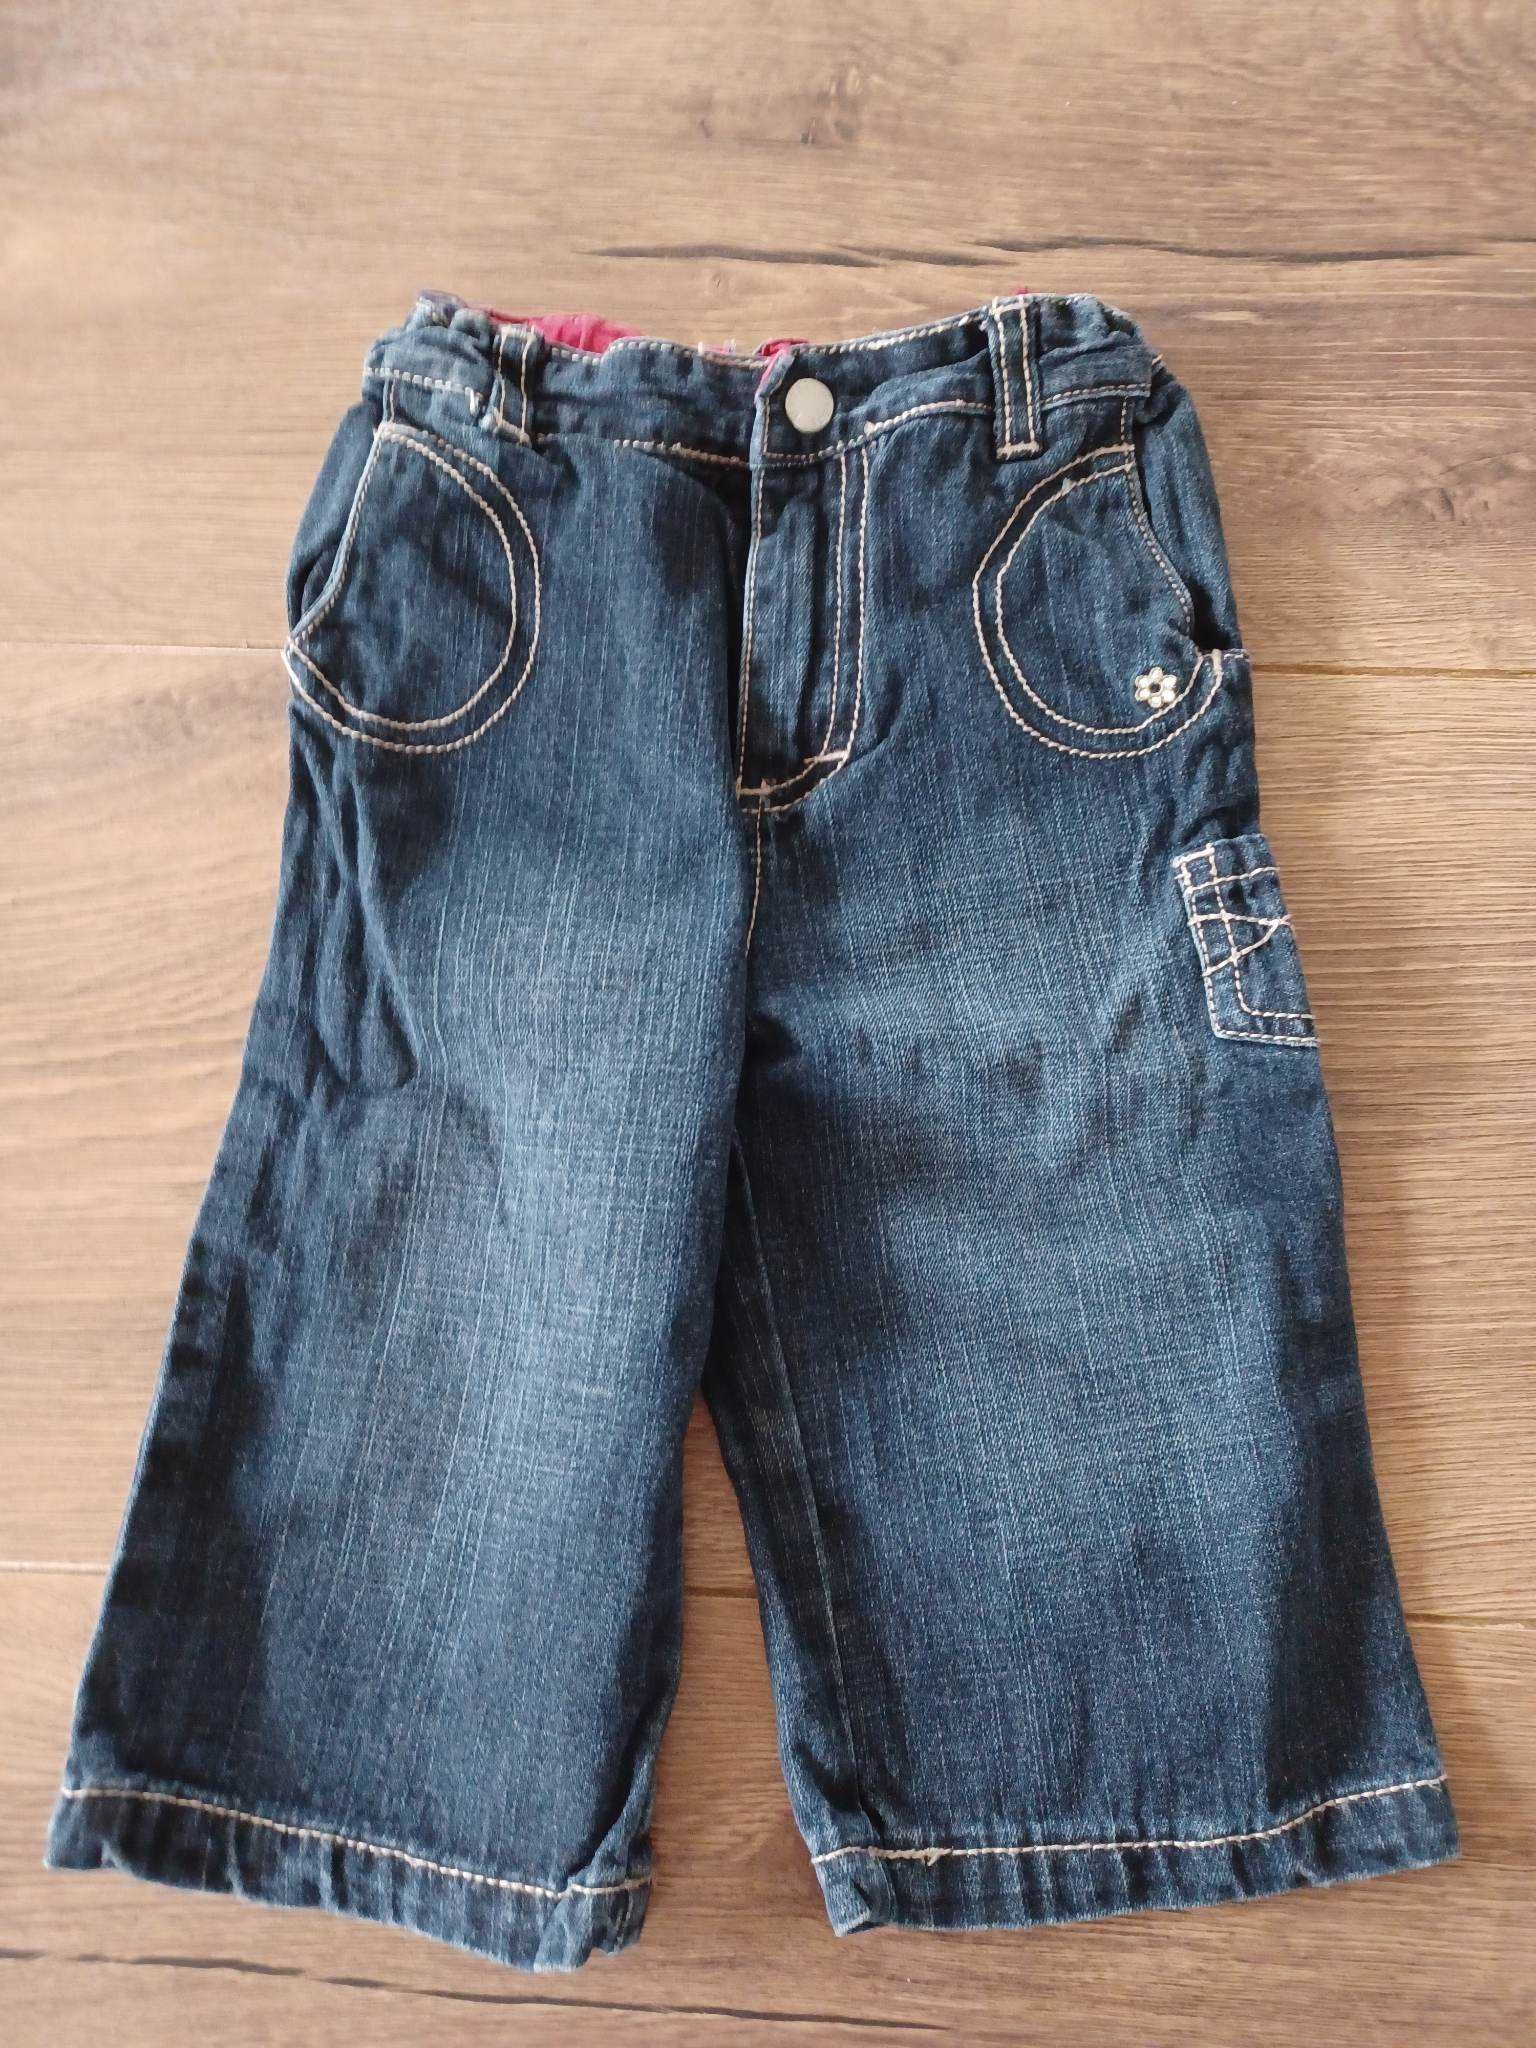 Sprzedam spodnie jeans rozmiar 80, 9-12 msc